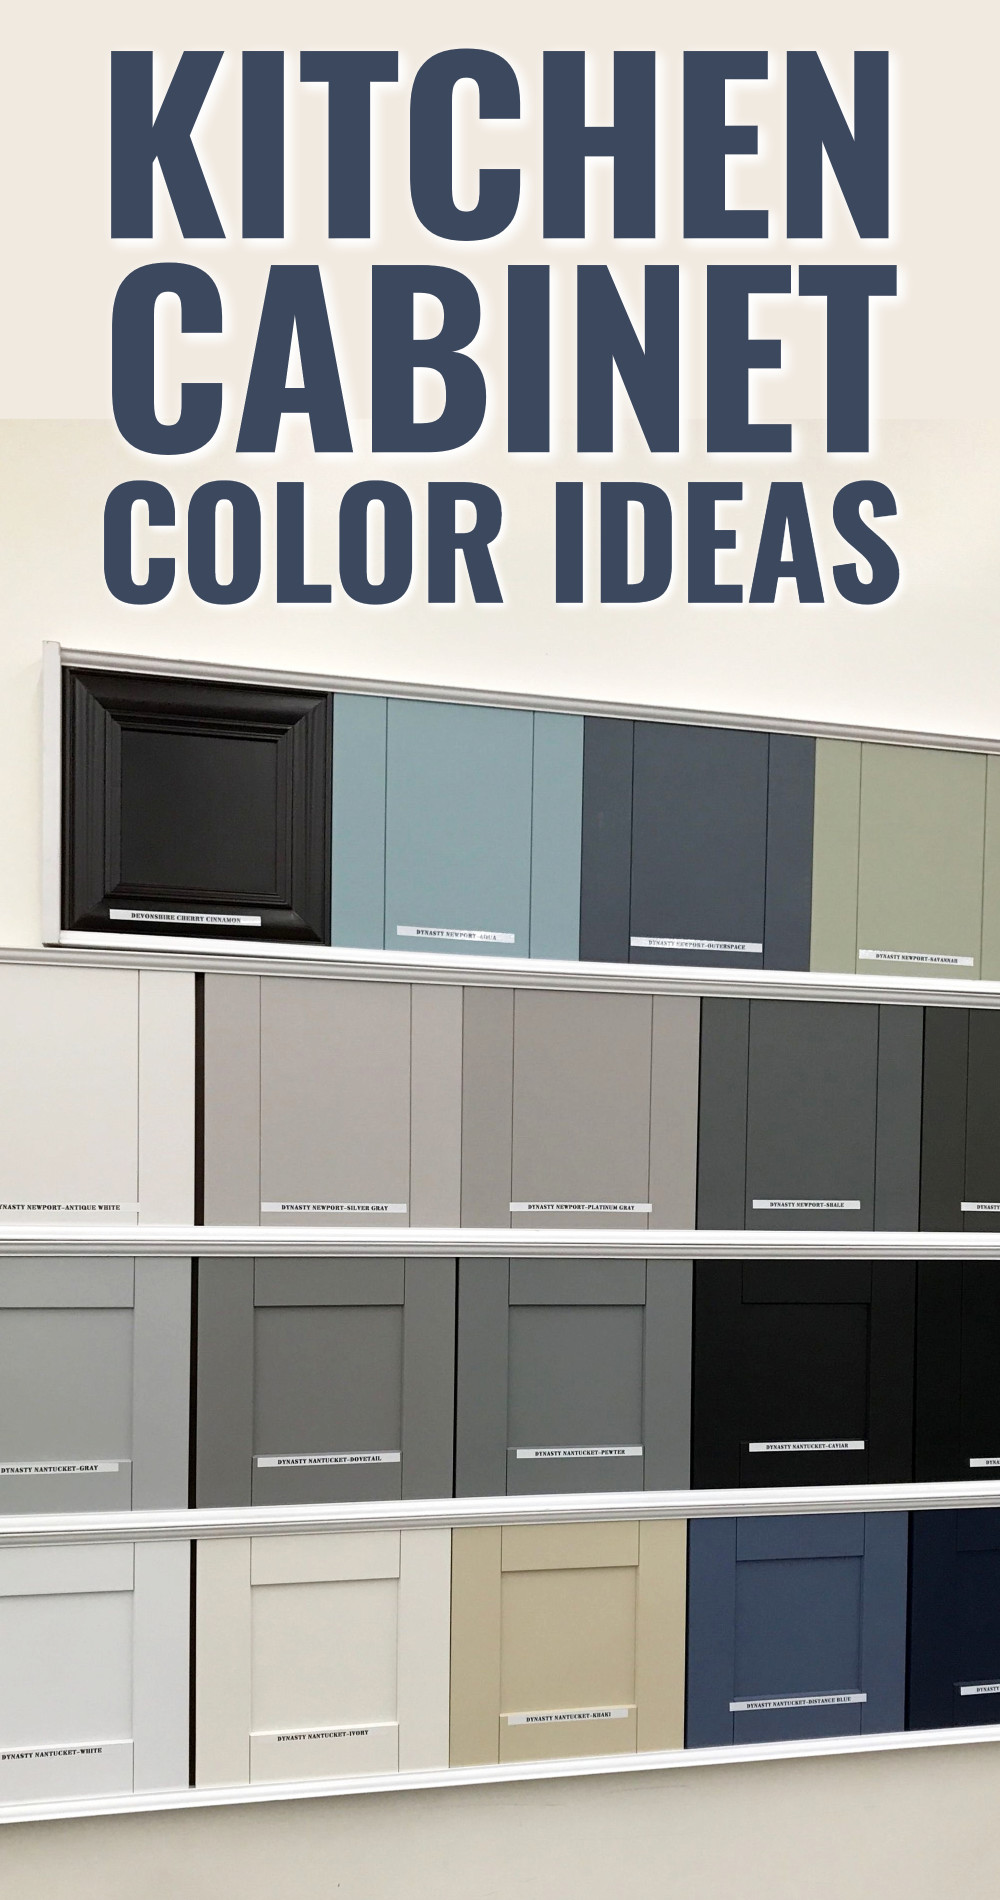 Kitchen cabinet color ideas